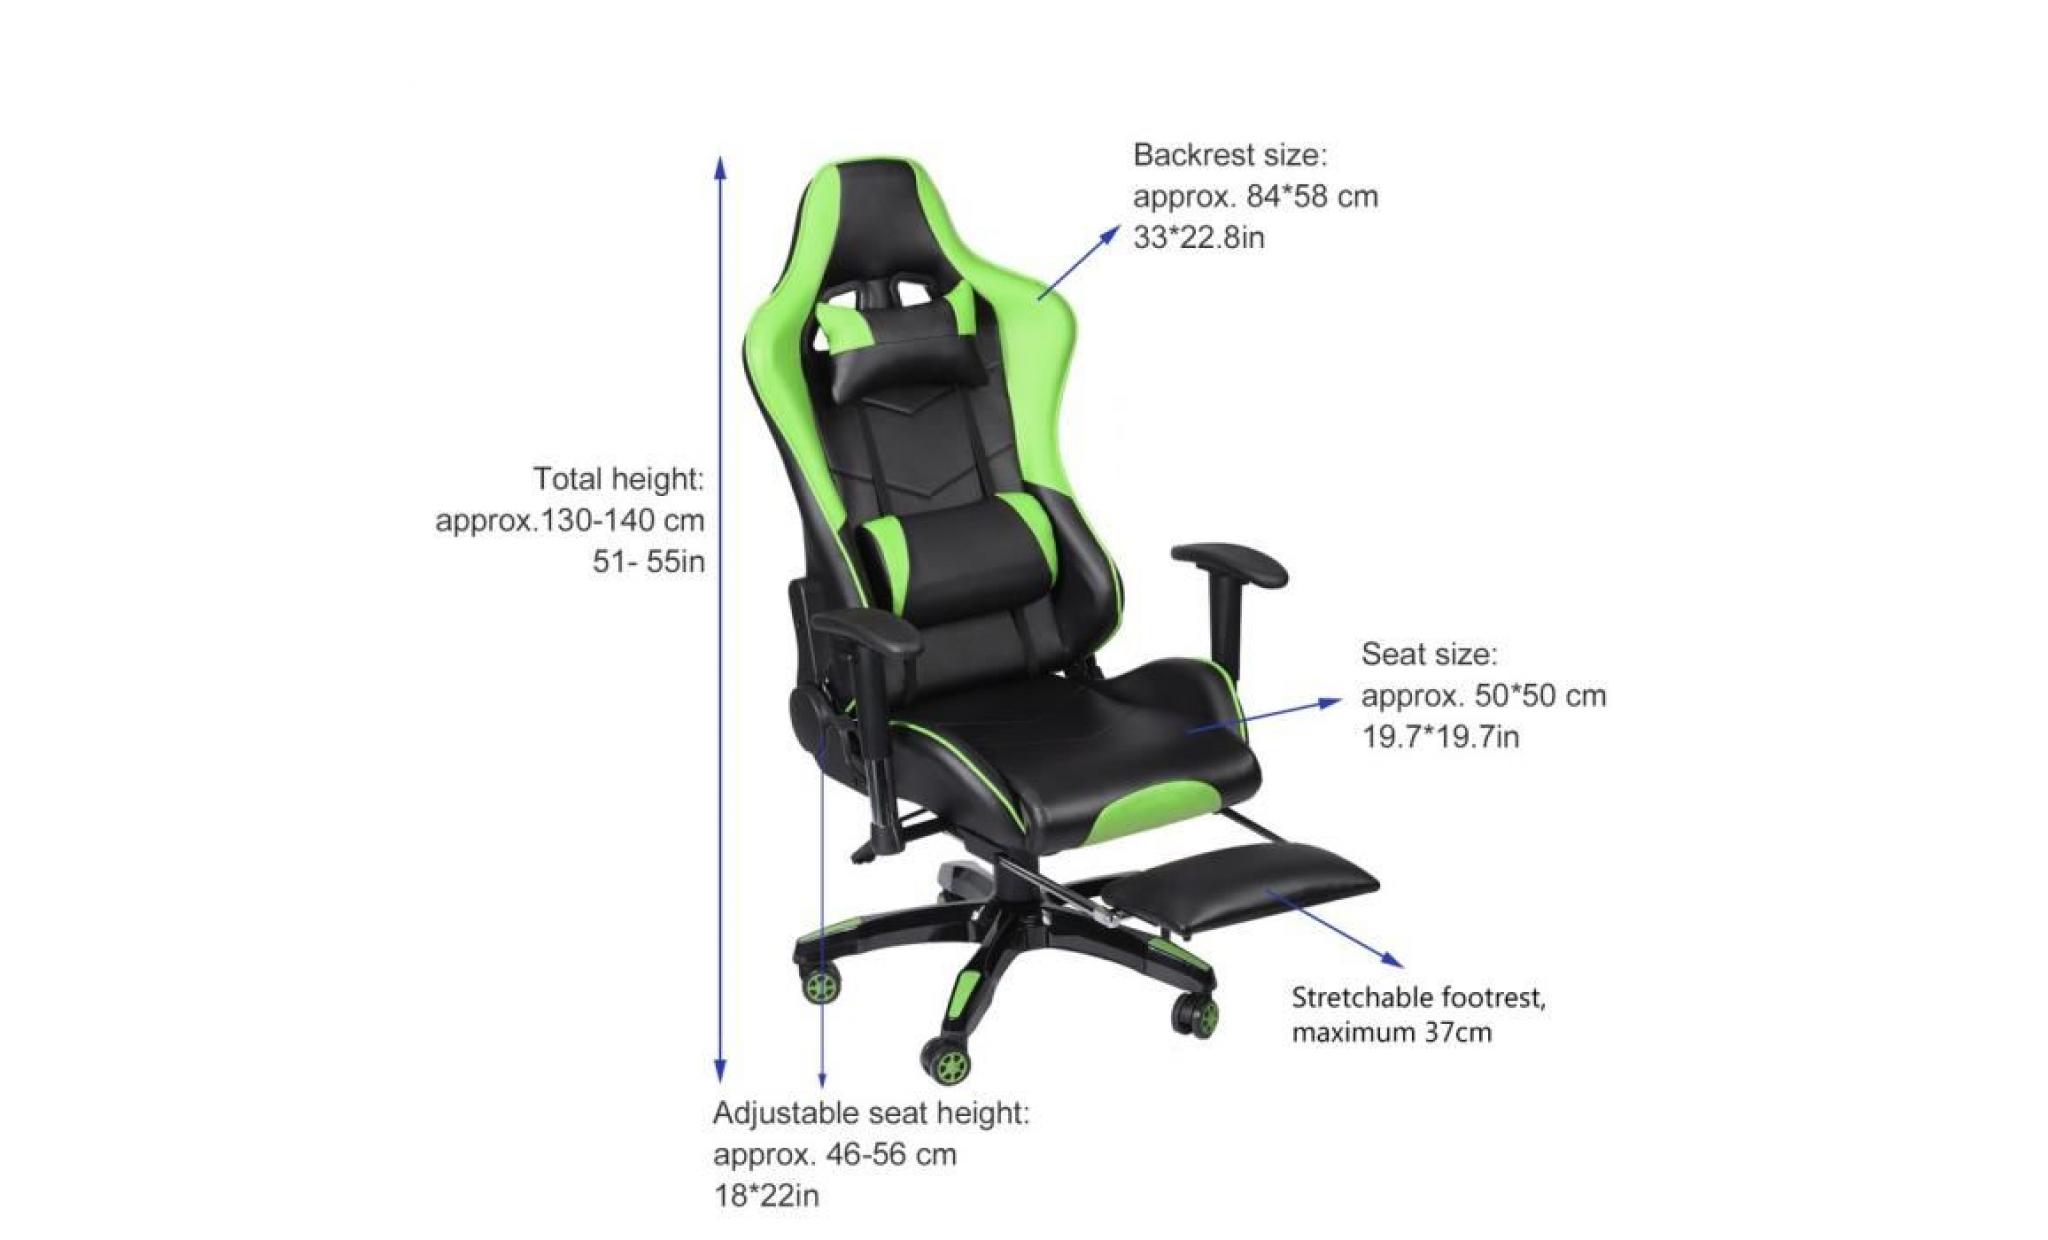 360 degrée chaise du bureau rotatif roues universels hauteur réglable vert + repose pied réglable pour jeu concours travail pas cher